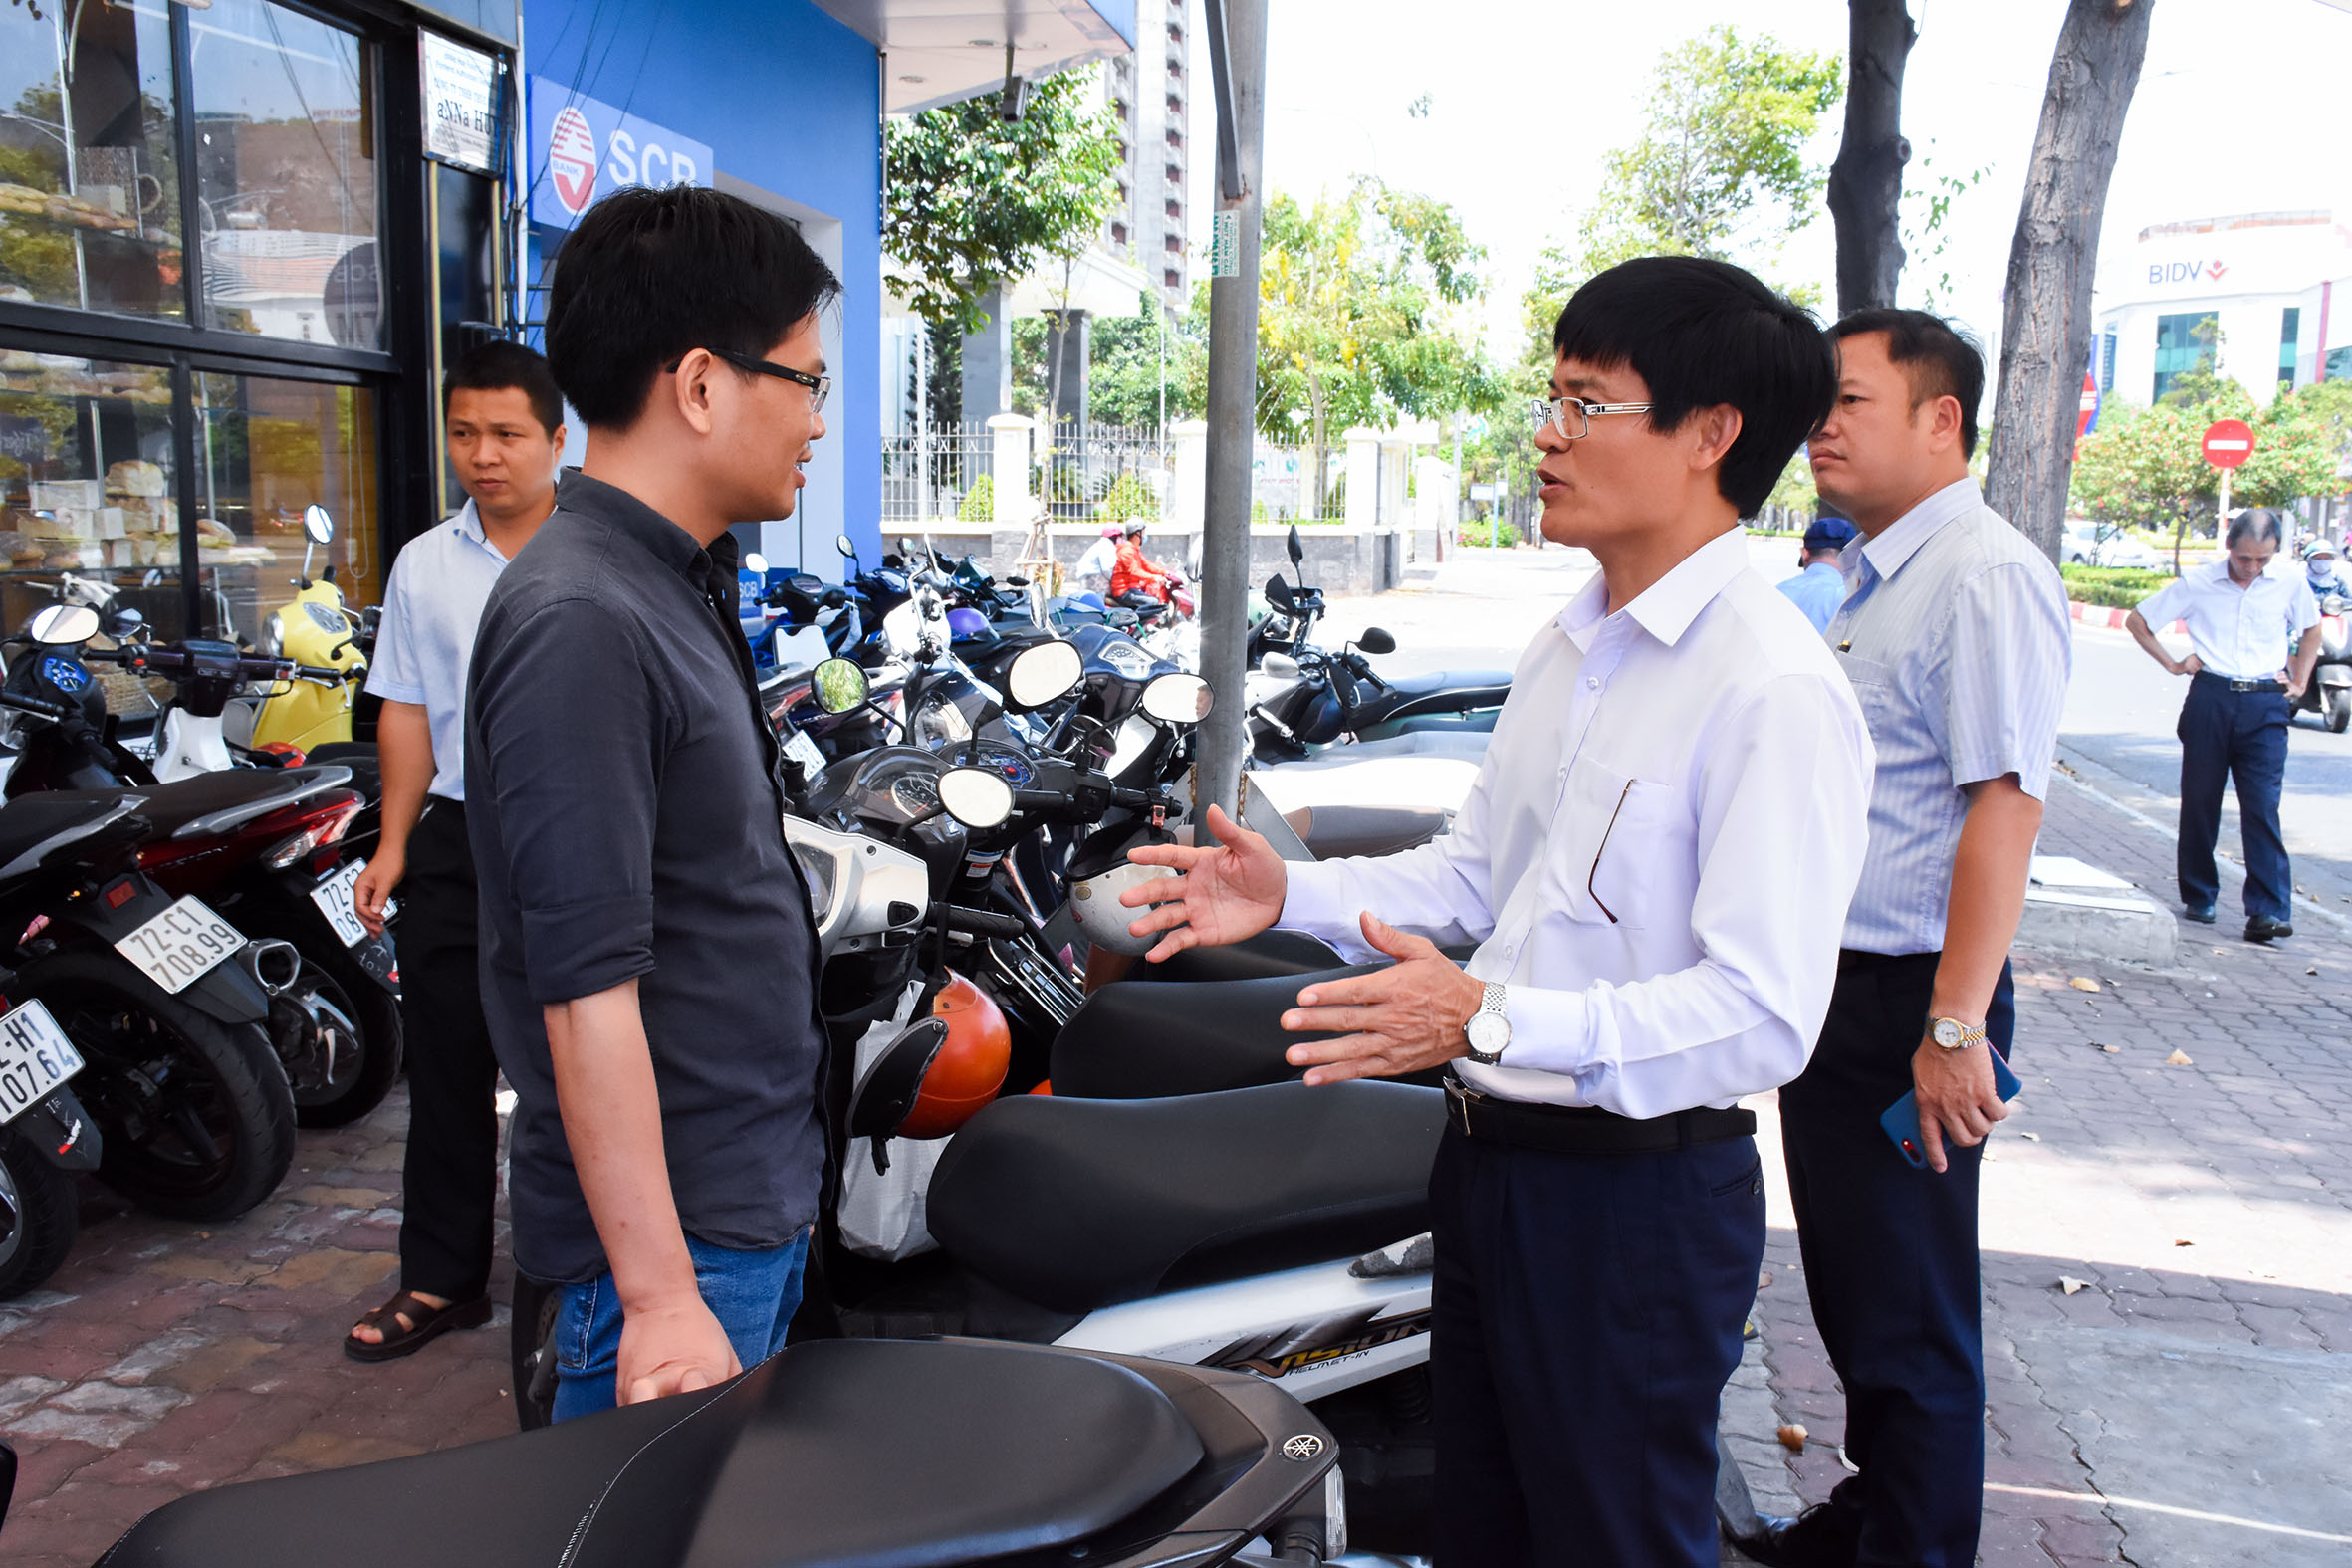 Phó Chủ tịch UBND TP. Vũng Tàu Vũ Hồng Thuấn nhắc nhở một hộ kinh doanh trên đường Nguyễn Thái Học tuân thủ quy định sử dụng vỉa hè.